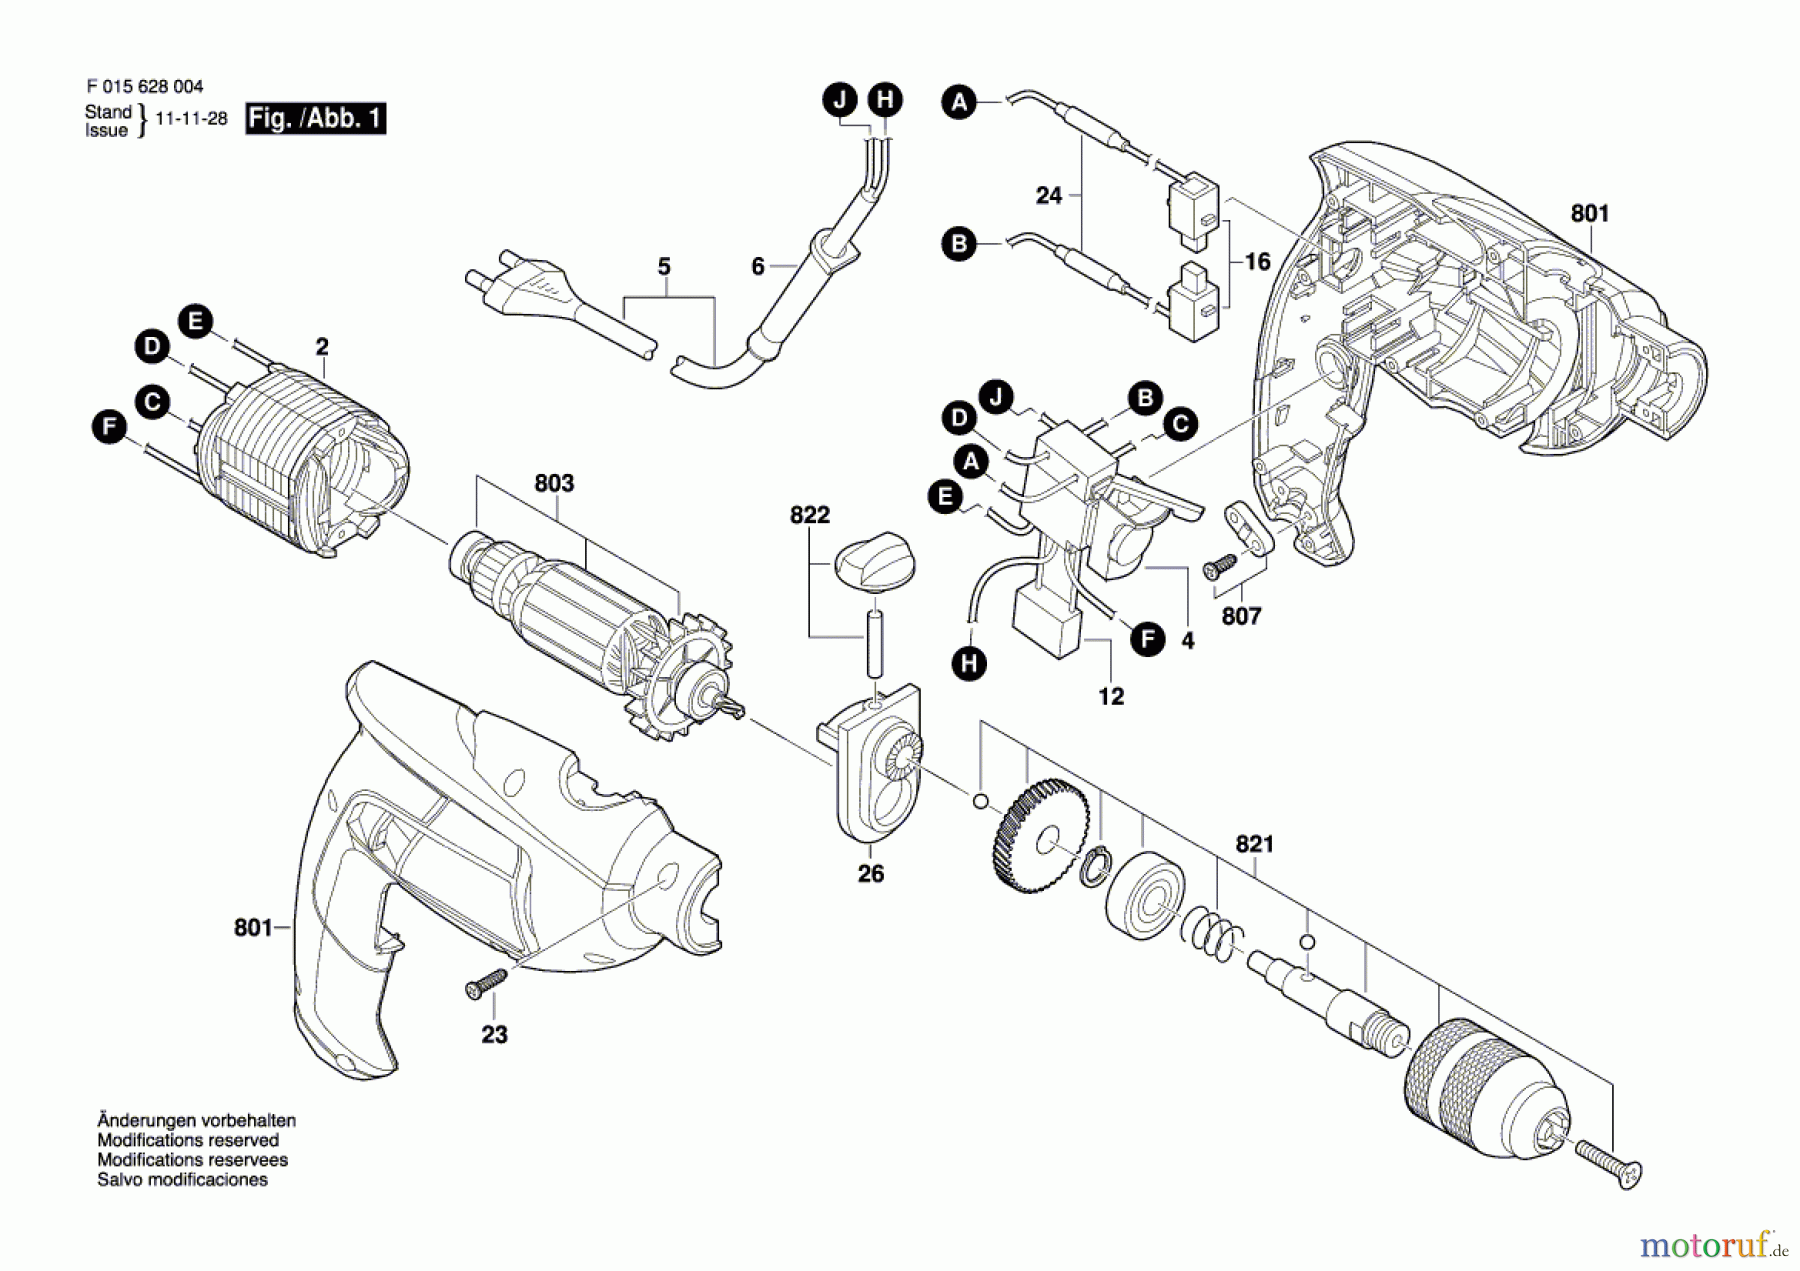  Bosch Werkzeug Hf-Schlagbohrmaschine 6280 Seite 1